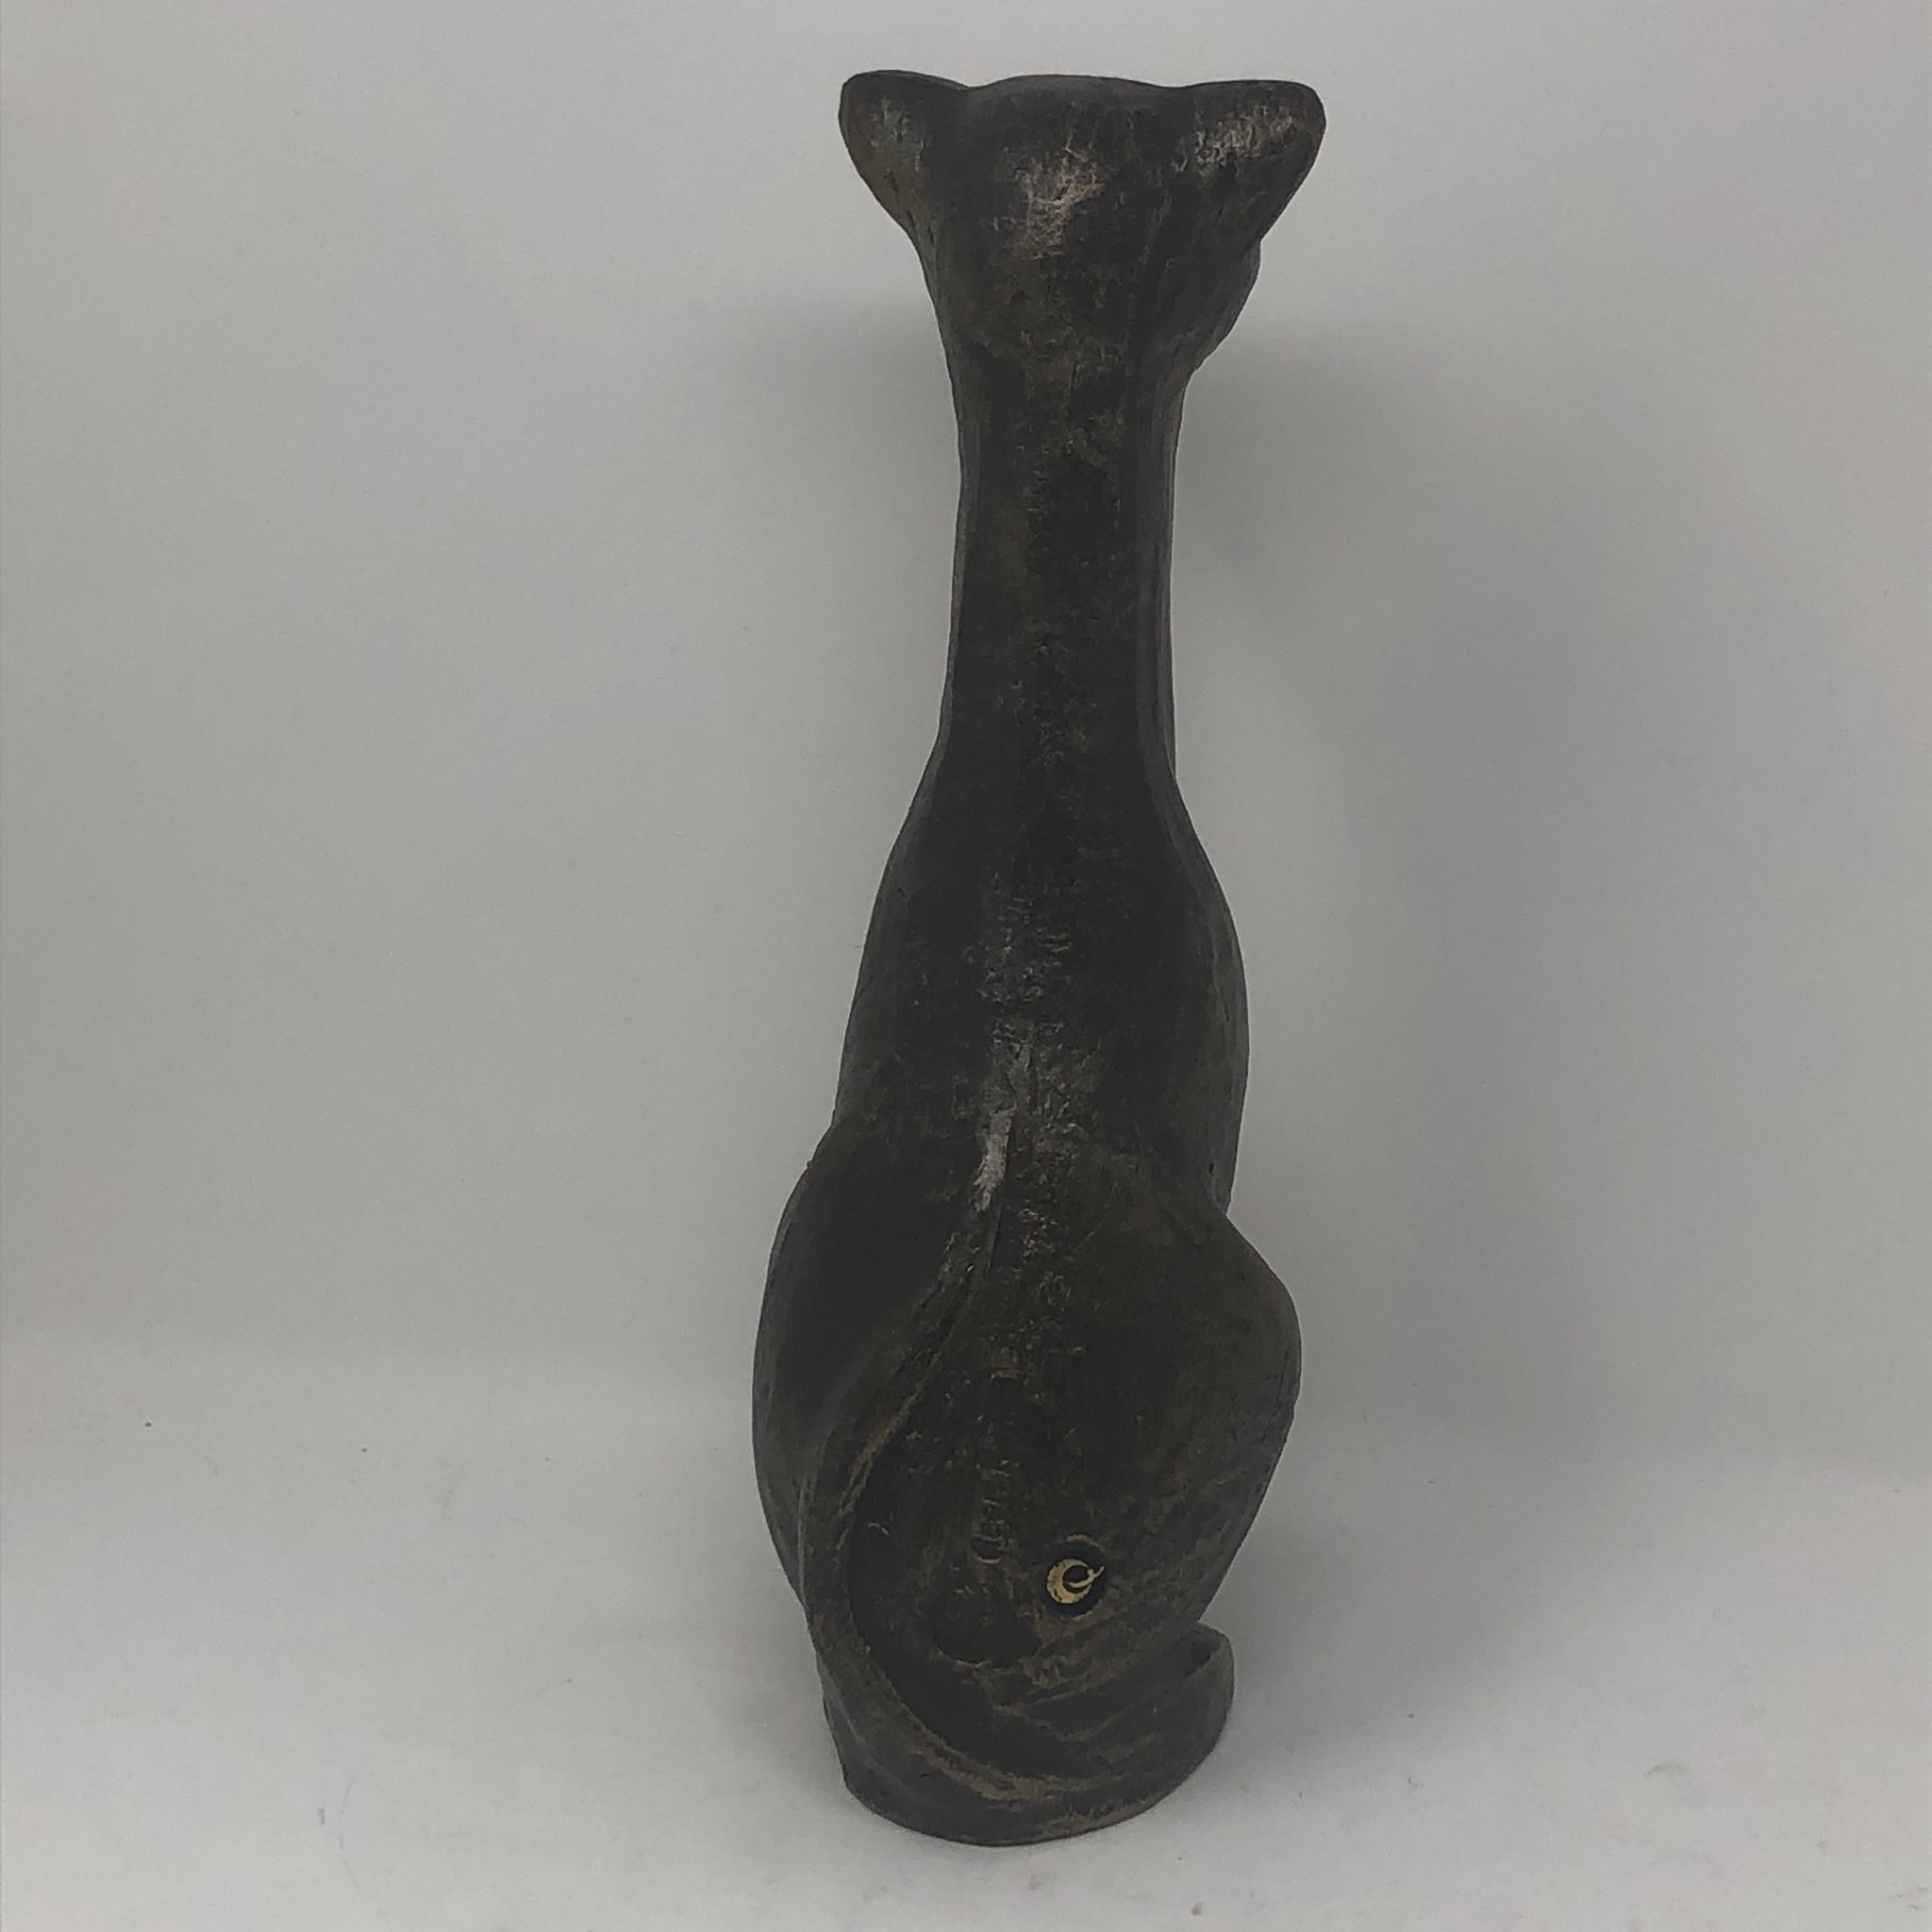 50% OFF Vintage Tall (12") Handmade Resin Cat